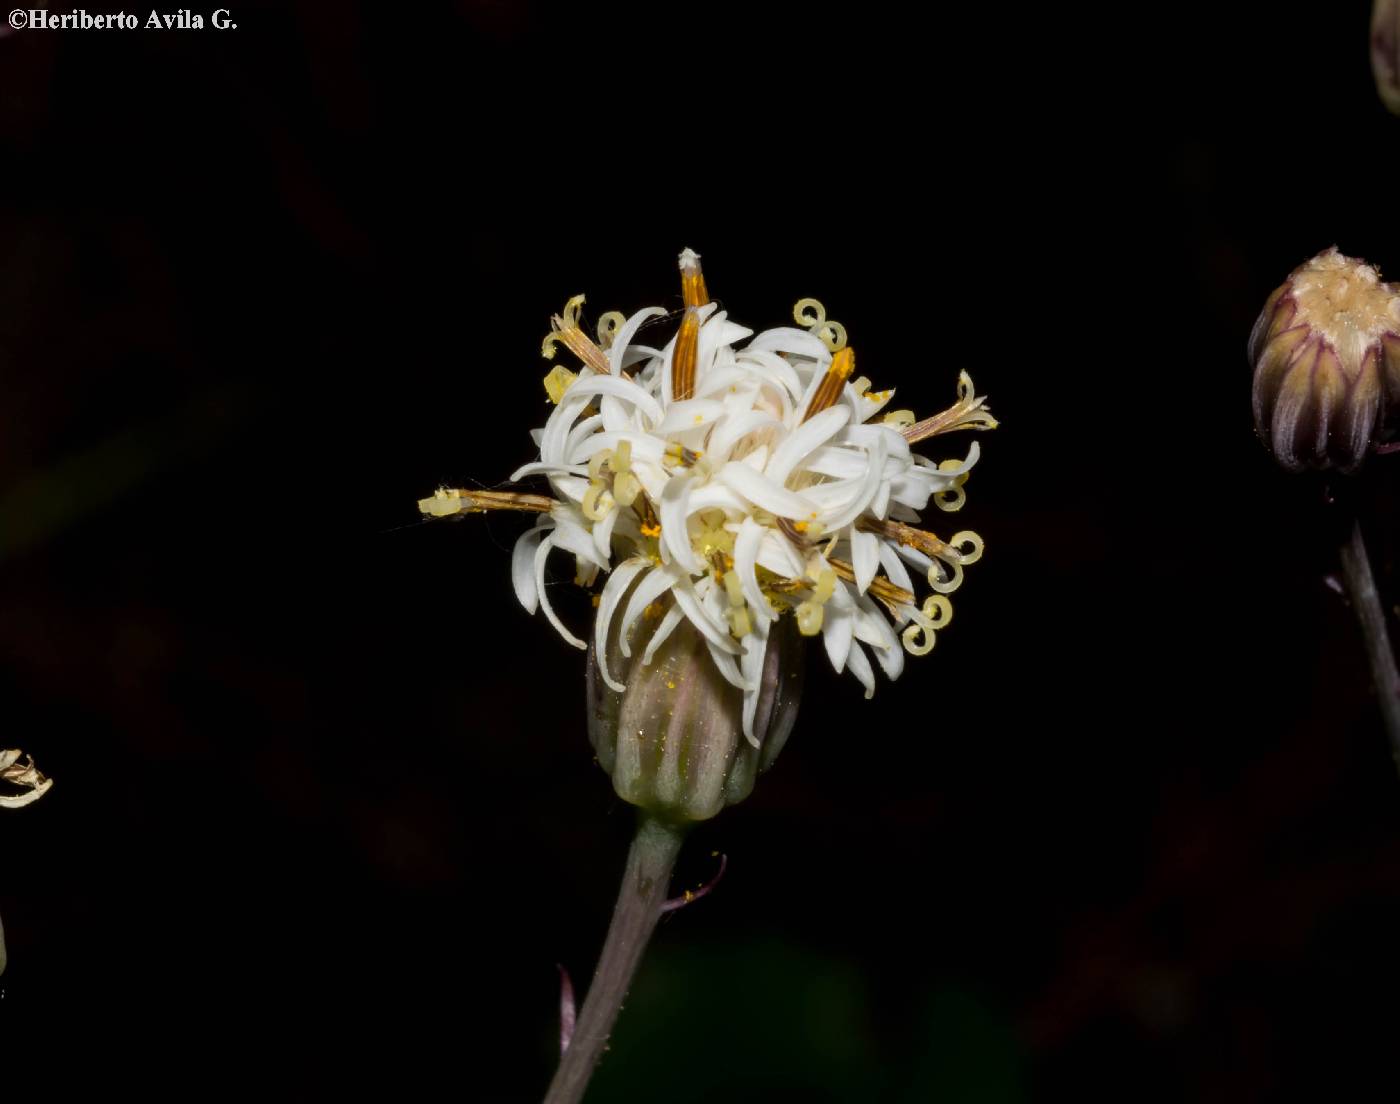 Psacalium pachyphyllum image